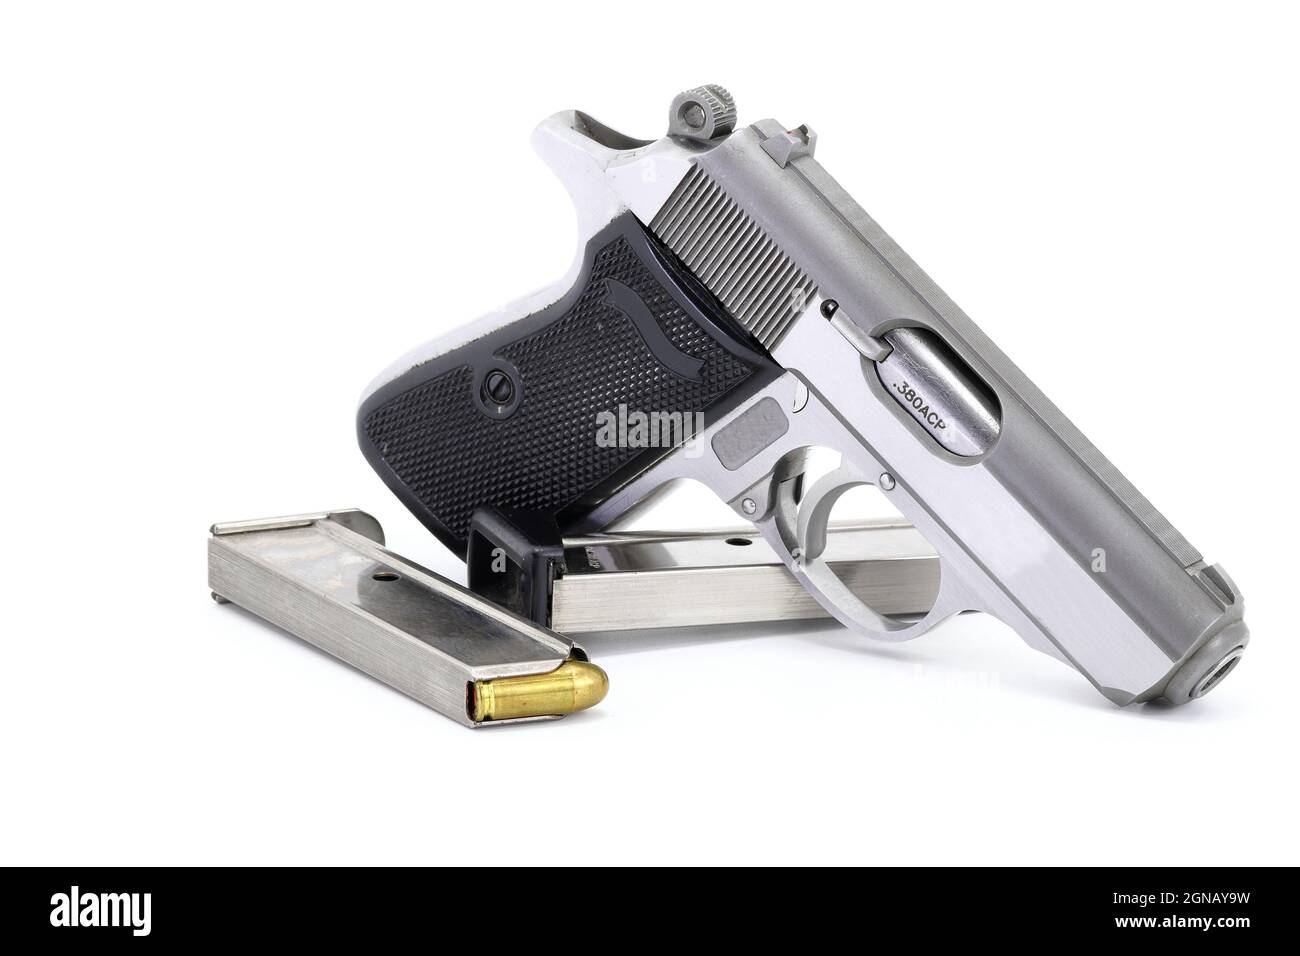 Pistola semiautomatica compatta, in acciaio inox PPK con caricatore di ricambio, vista laterale destra, pronta per l'uso, isolata su sfondo bianco Foto Stock